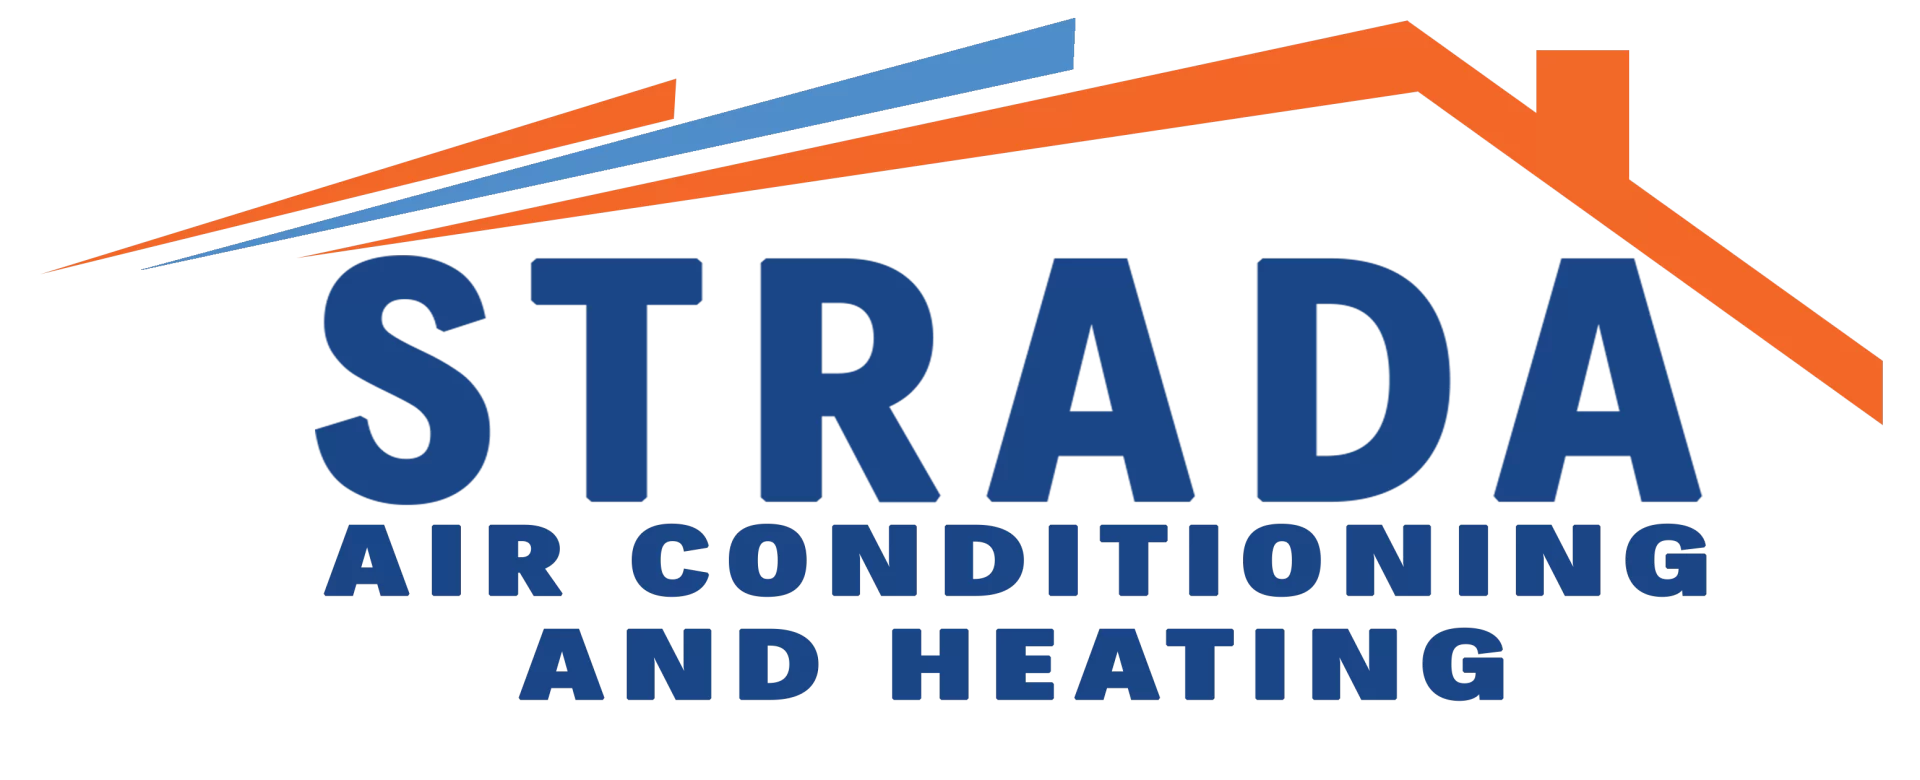 Un logotipo que reza &quot;Strada Air Conditioning And Heating&quot; con un techo azul y naranja.